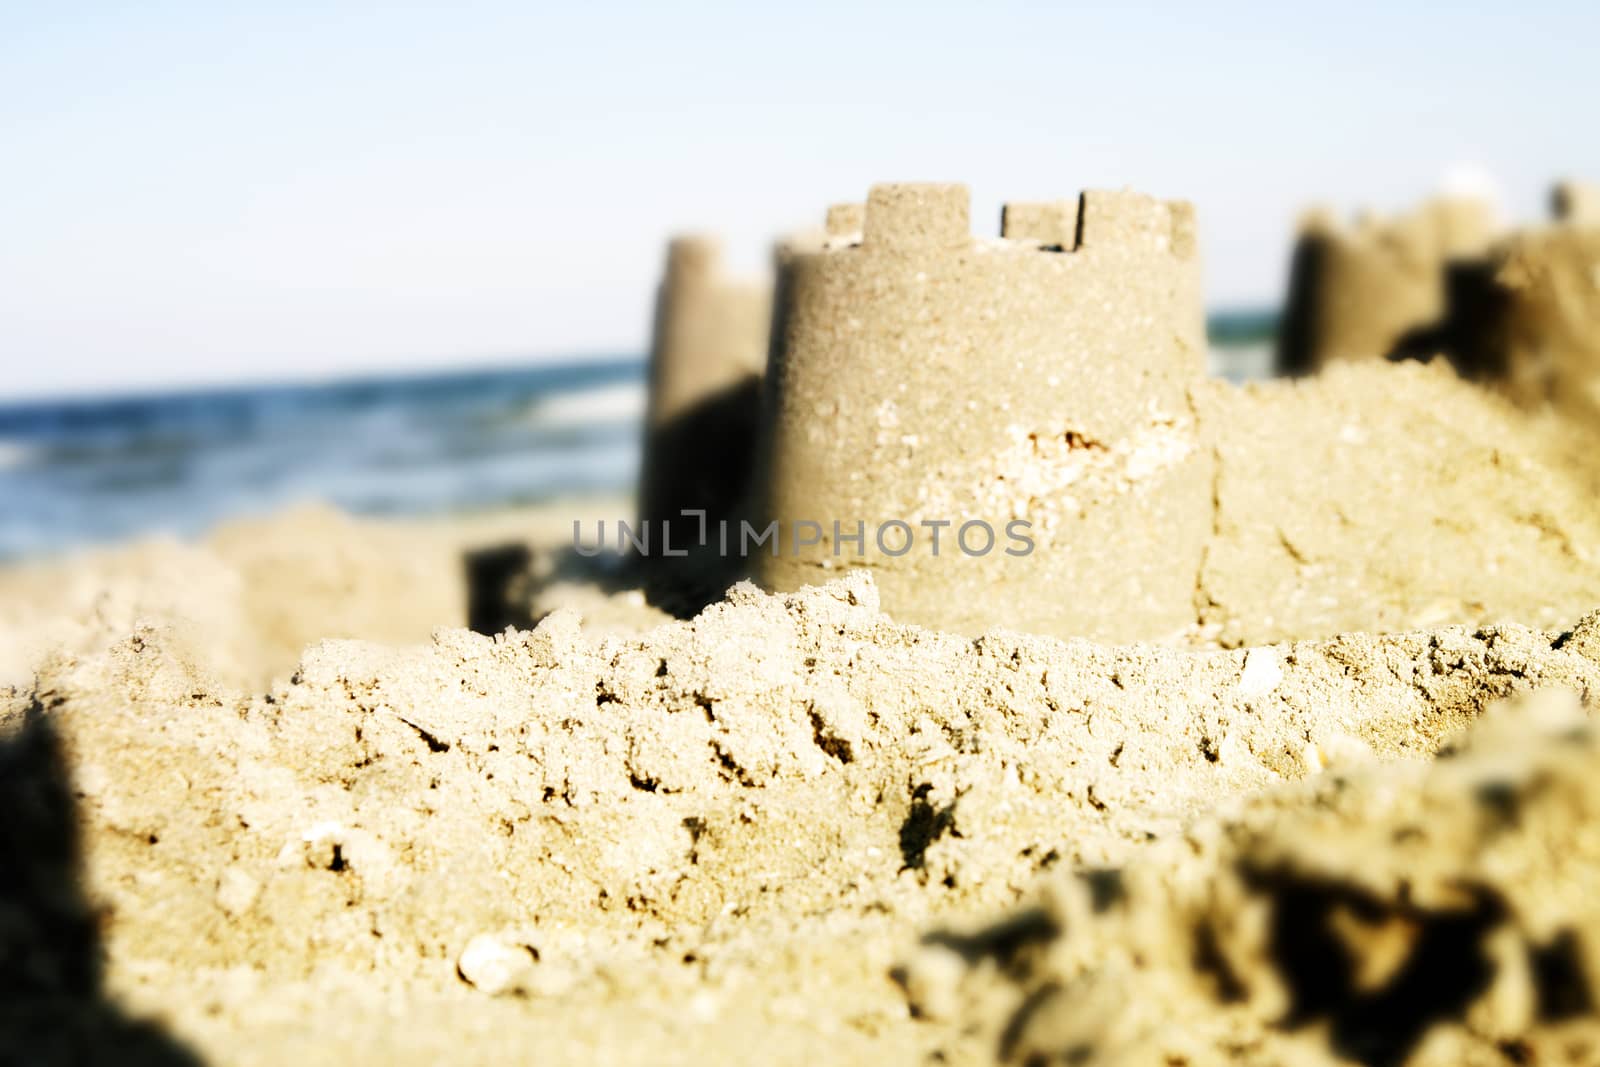 Sand castle on the beach.